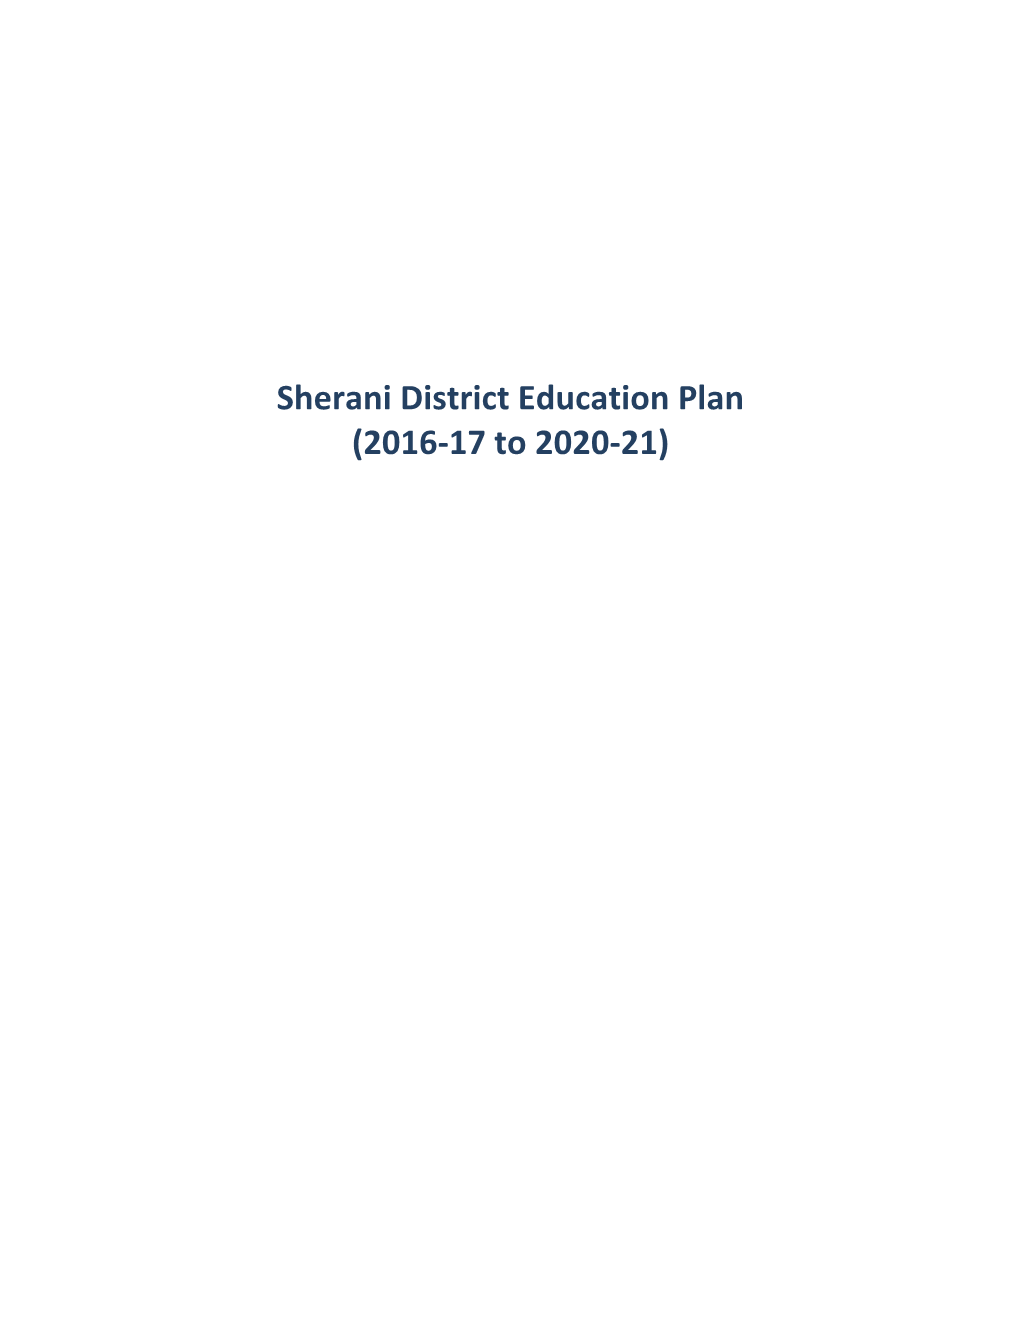 Sherani District Education Plan (2016-17 to 2020-21)